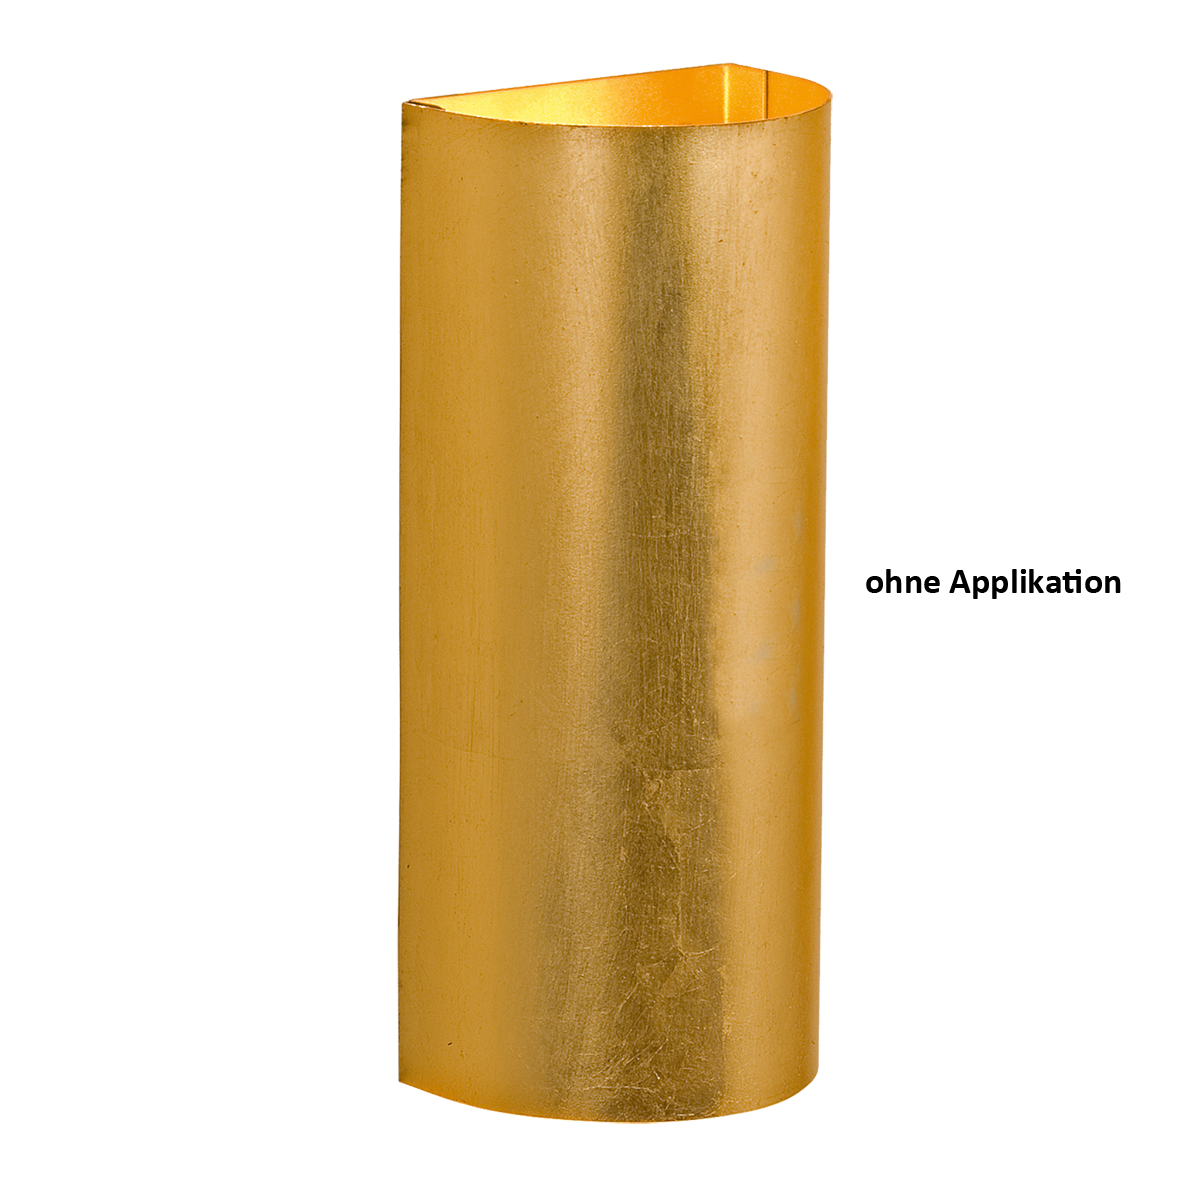 Solo Wandleuchte Blende 2 x GU10 LED  up & down Eisen Blattfarben Gold, Silber oder Kupfer nach Wahl